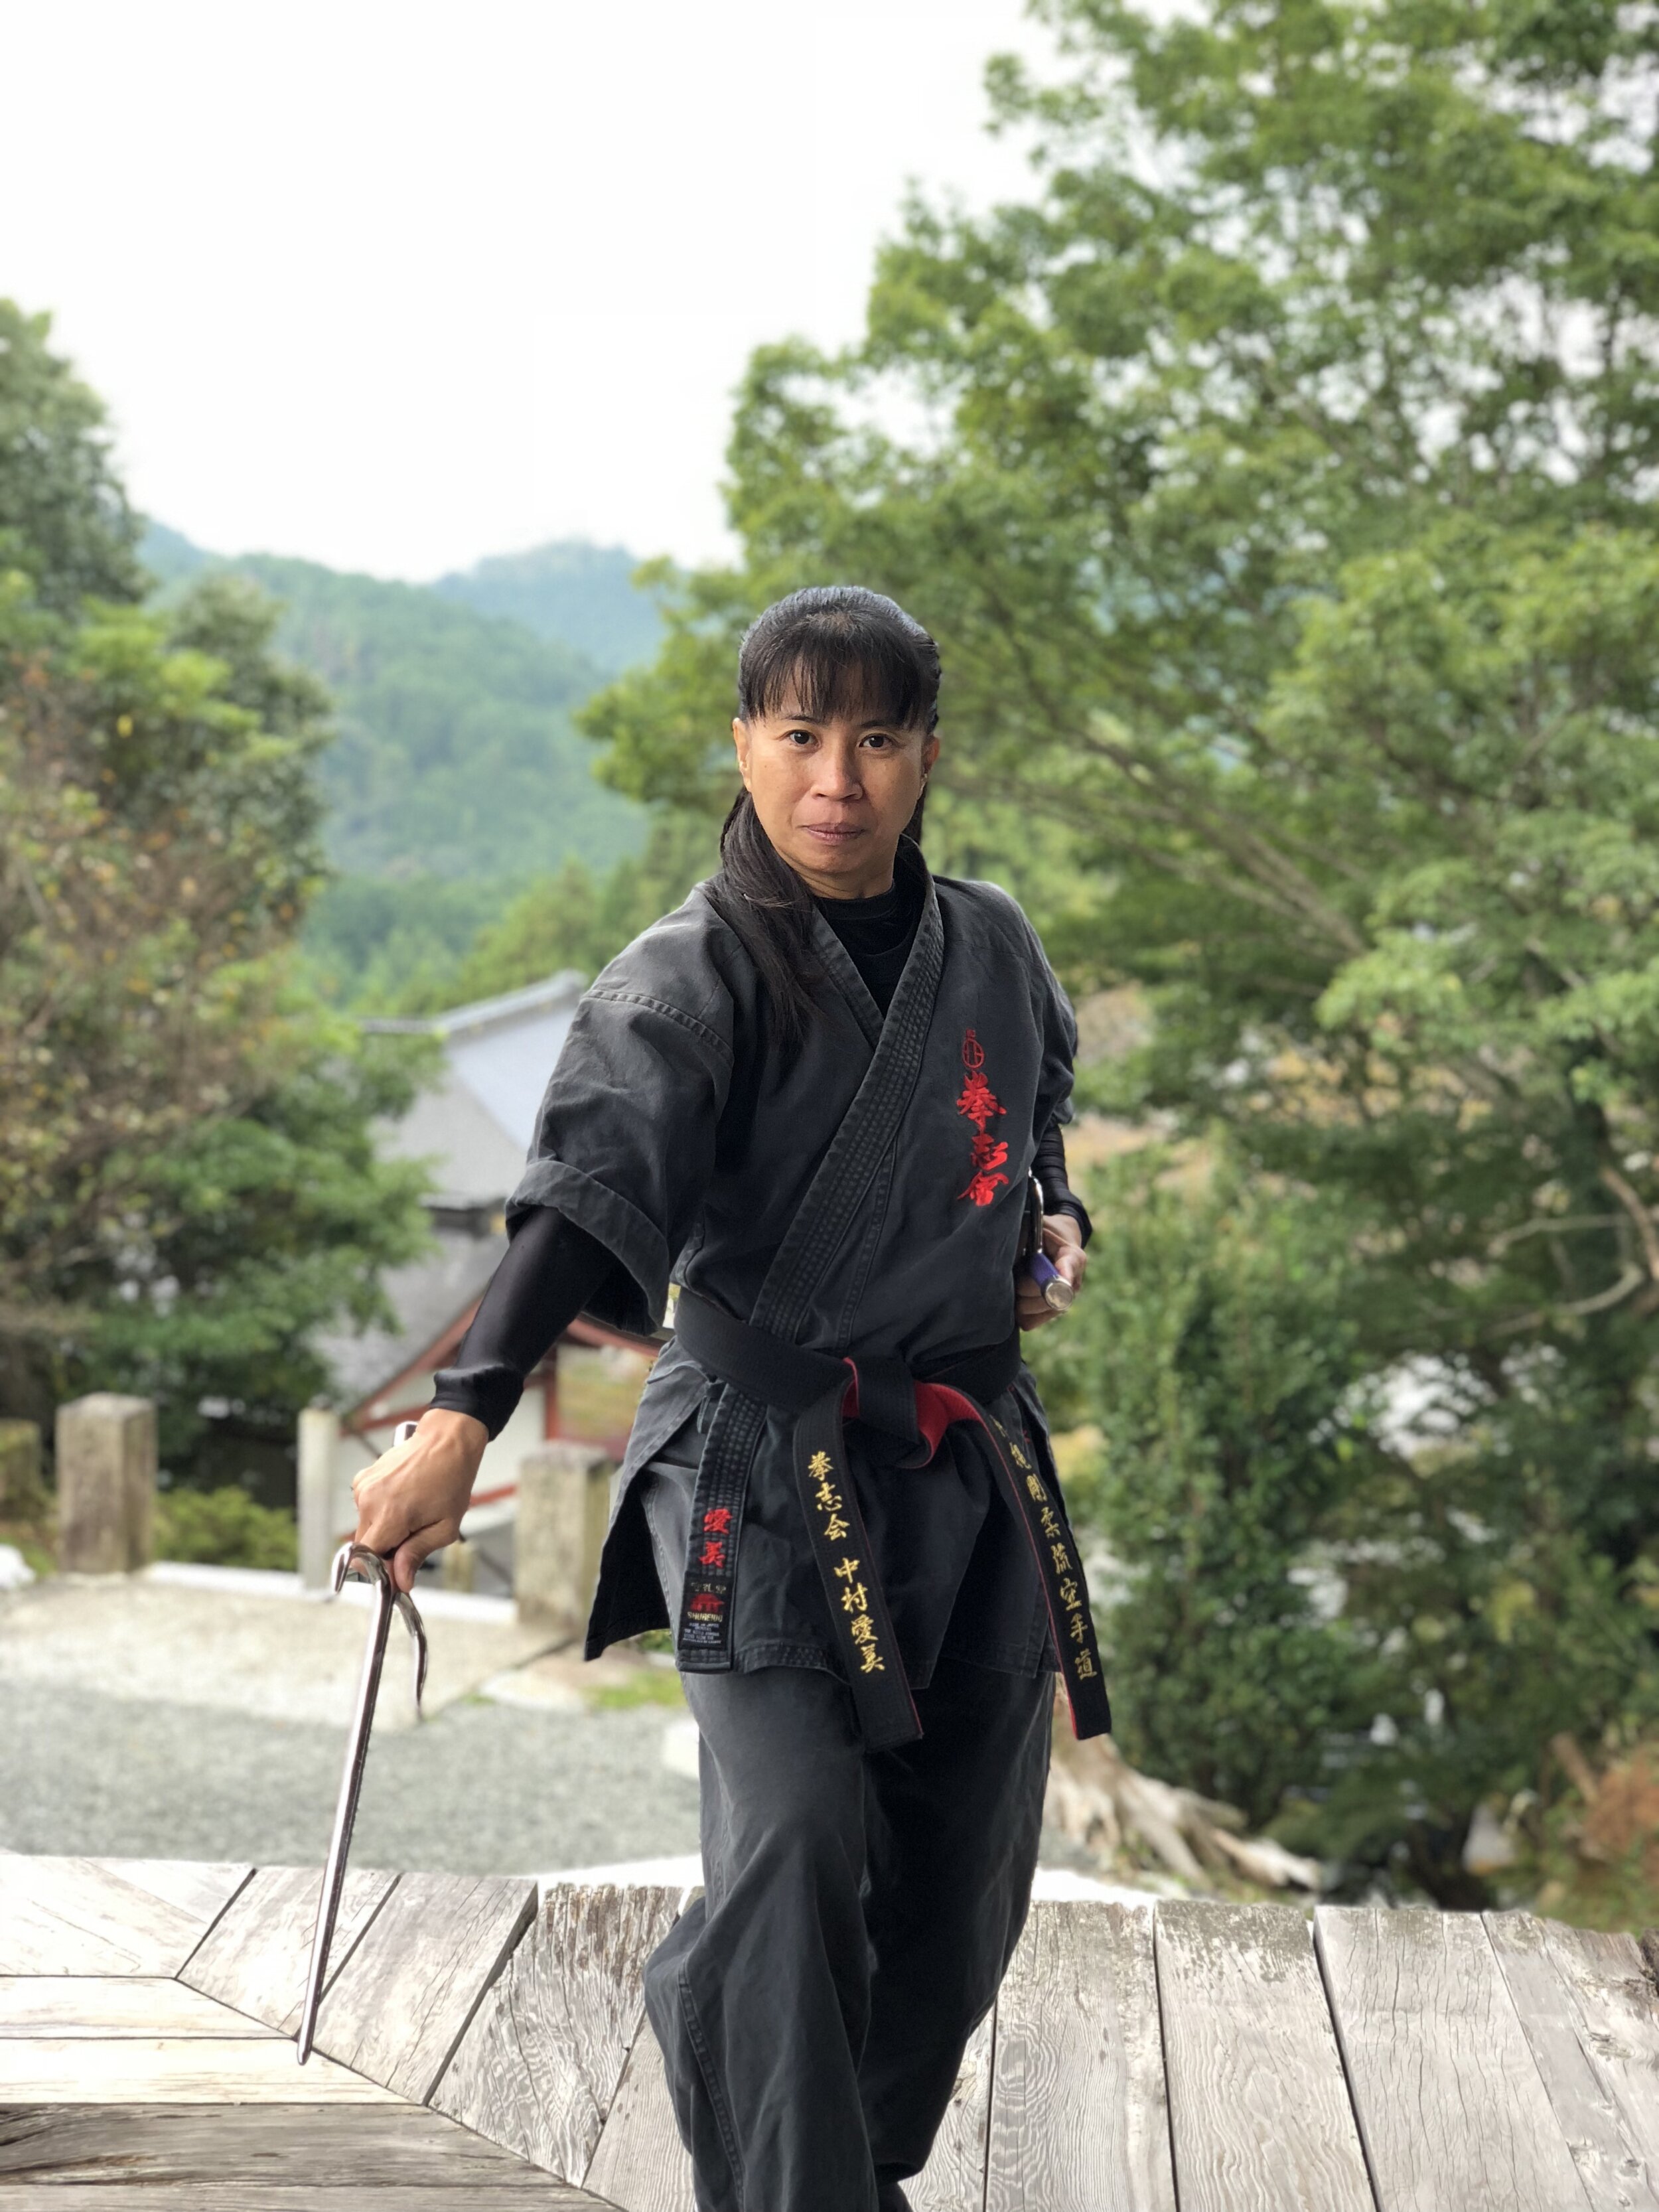 琉球王国の武術「ティー」。Karate. The ancient fighting art of Okinawa【Vol.3】